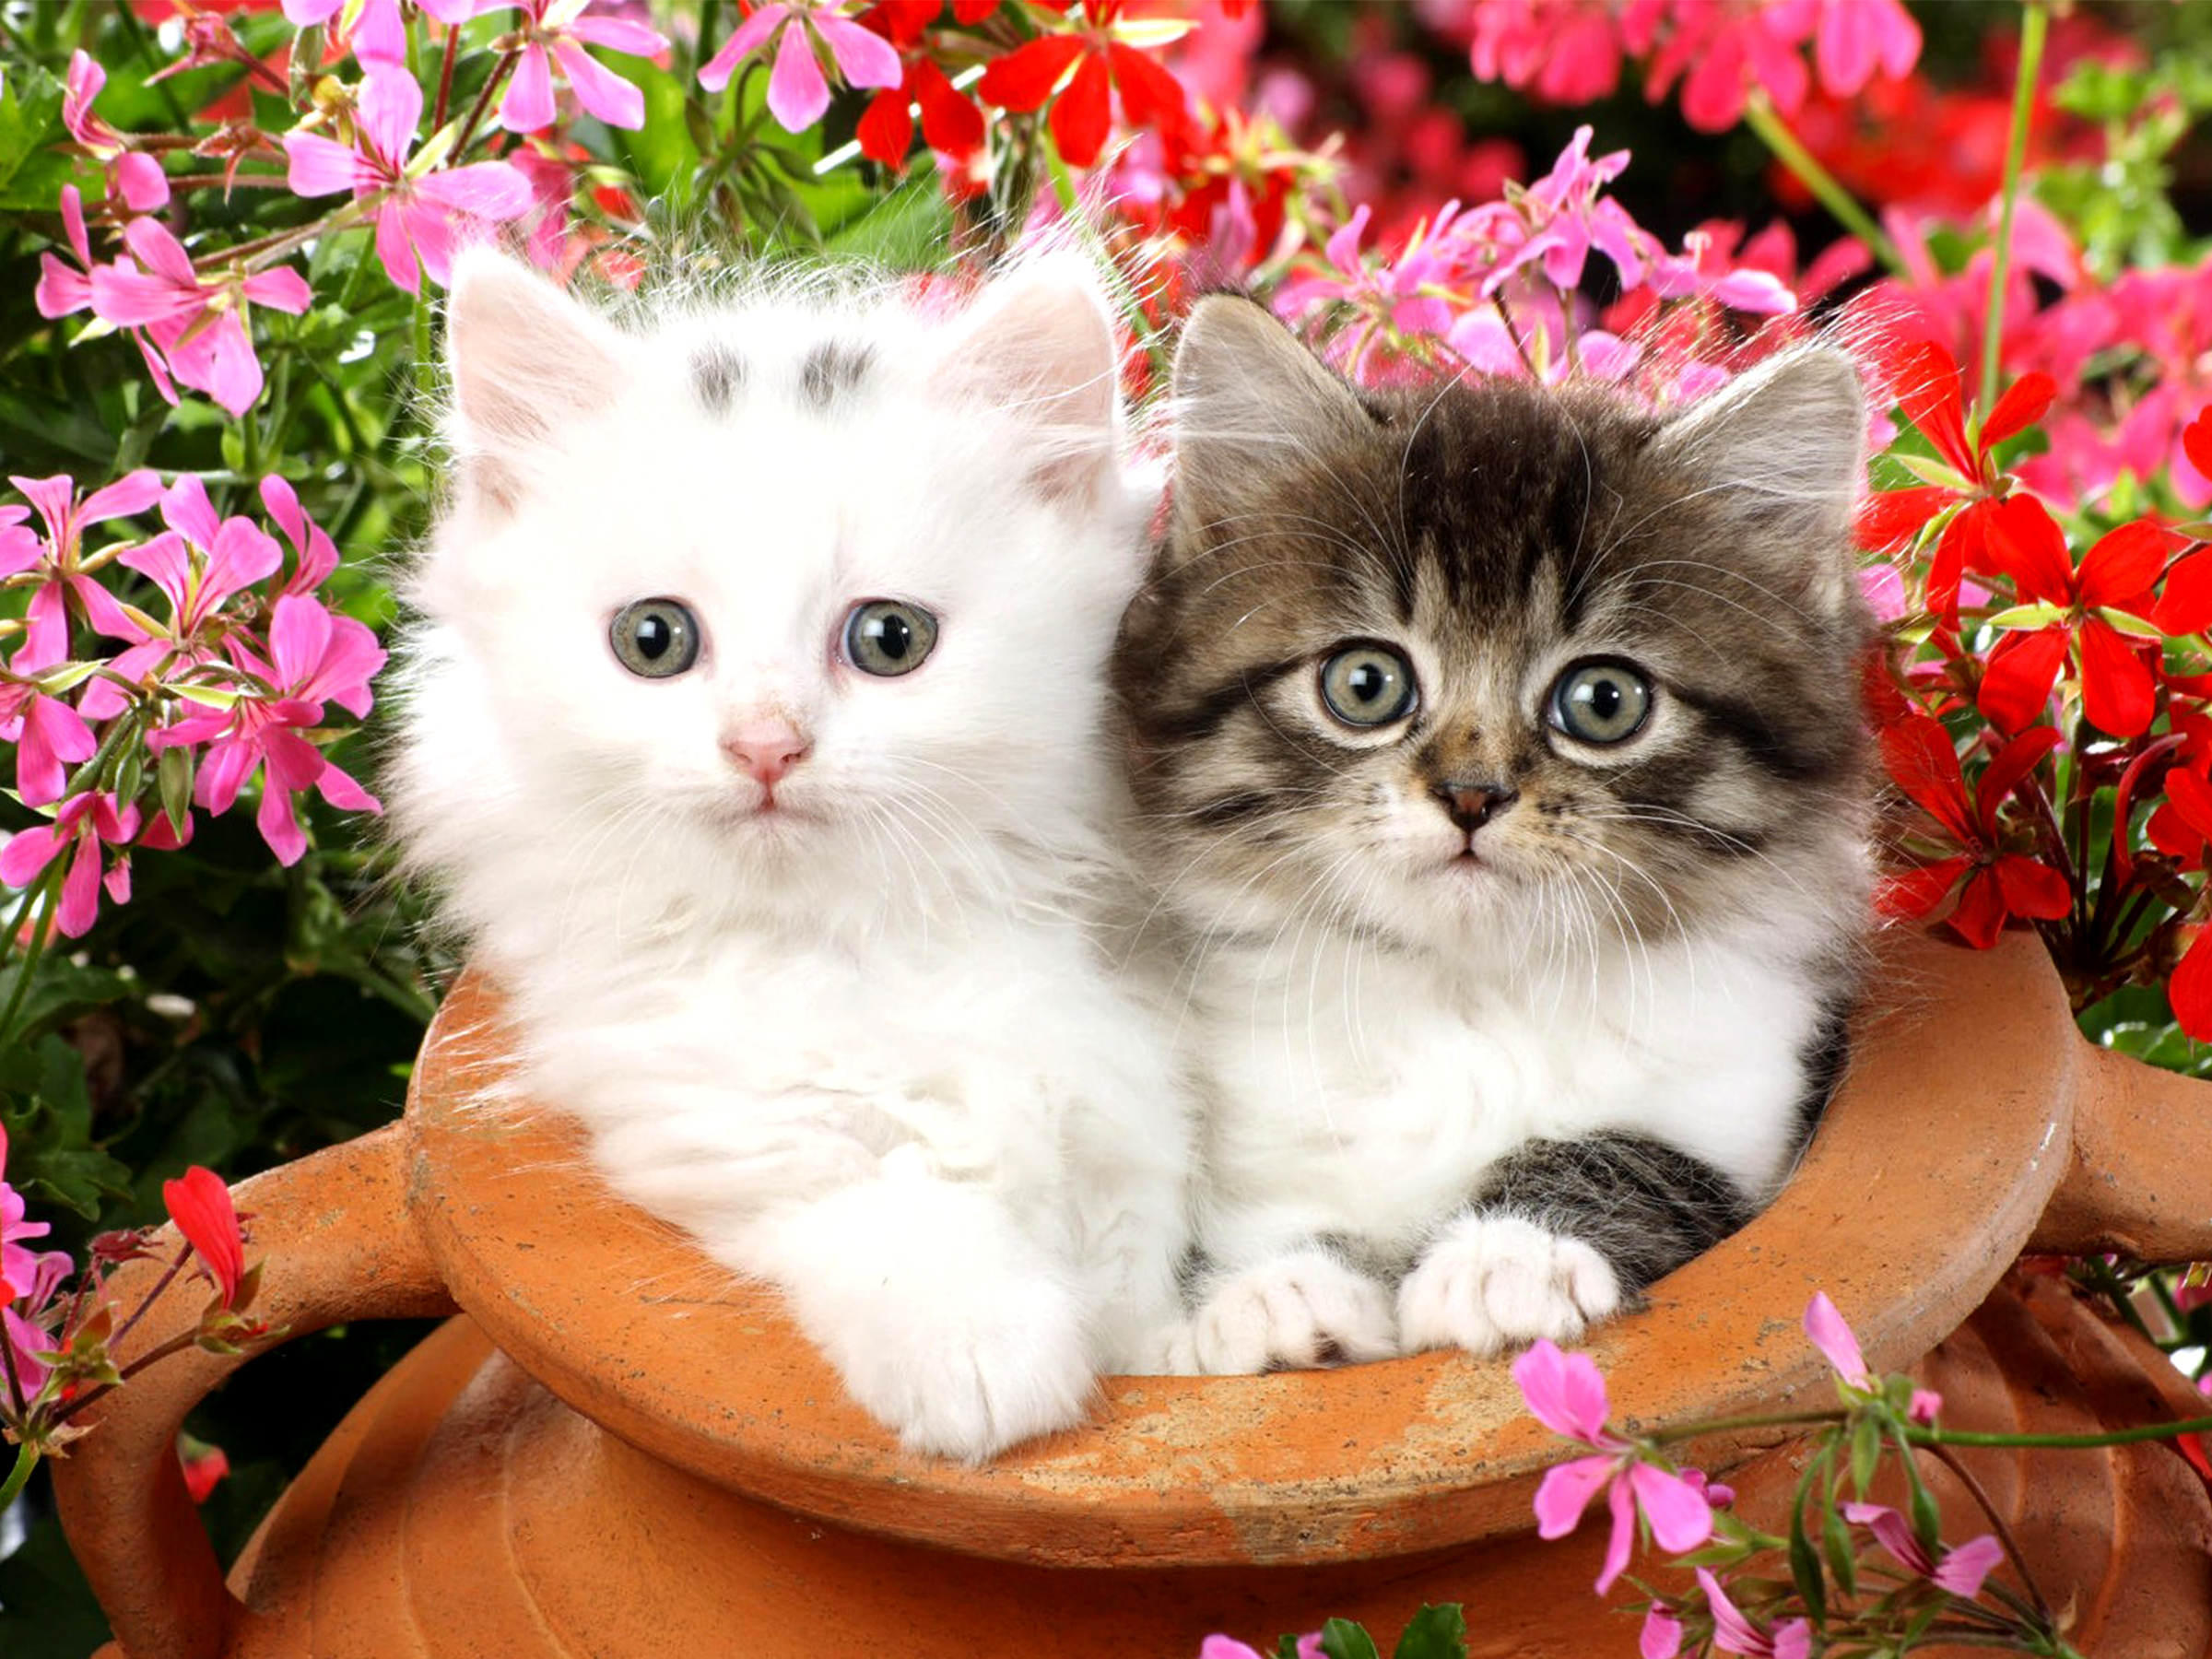 animal, cat, ceramic, flower, fluffy, kitten, pink flower, red flower, cats